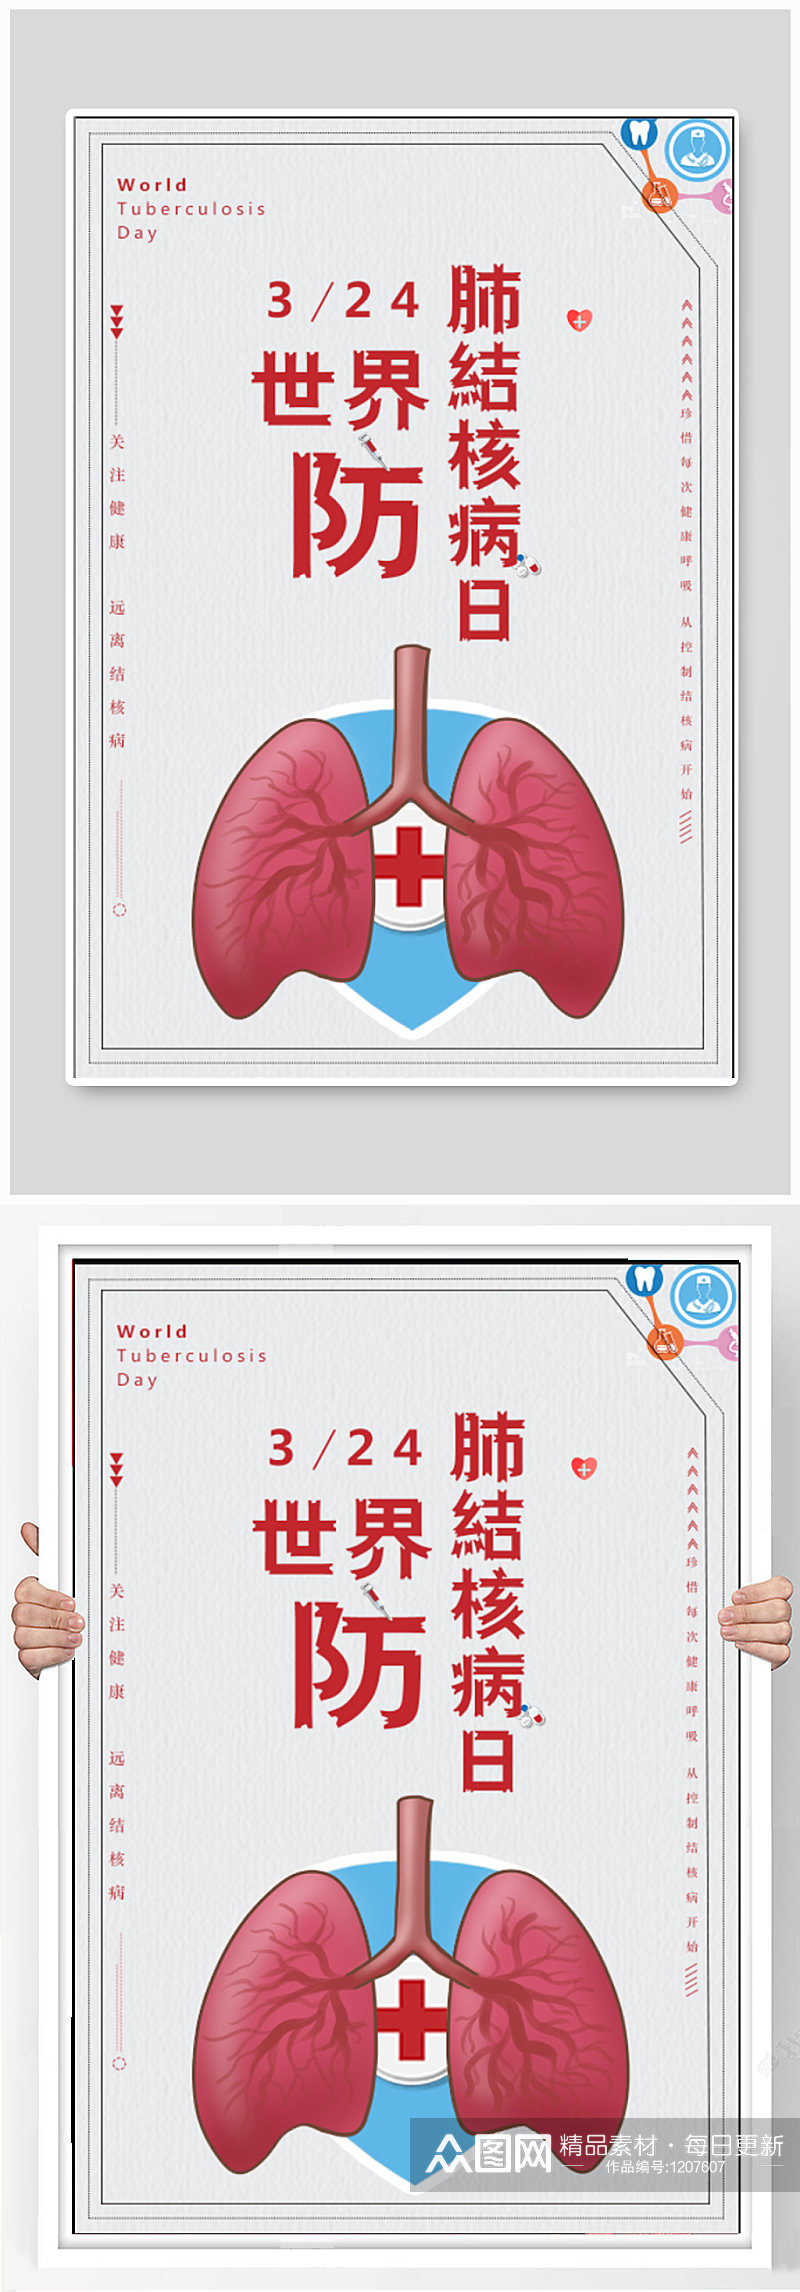 世界结核病防治日宣传海报素材